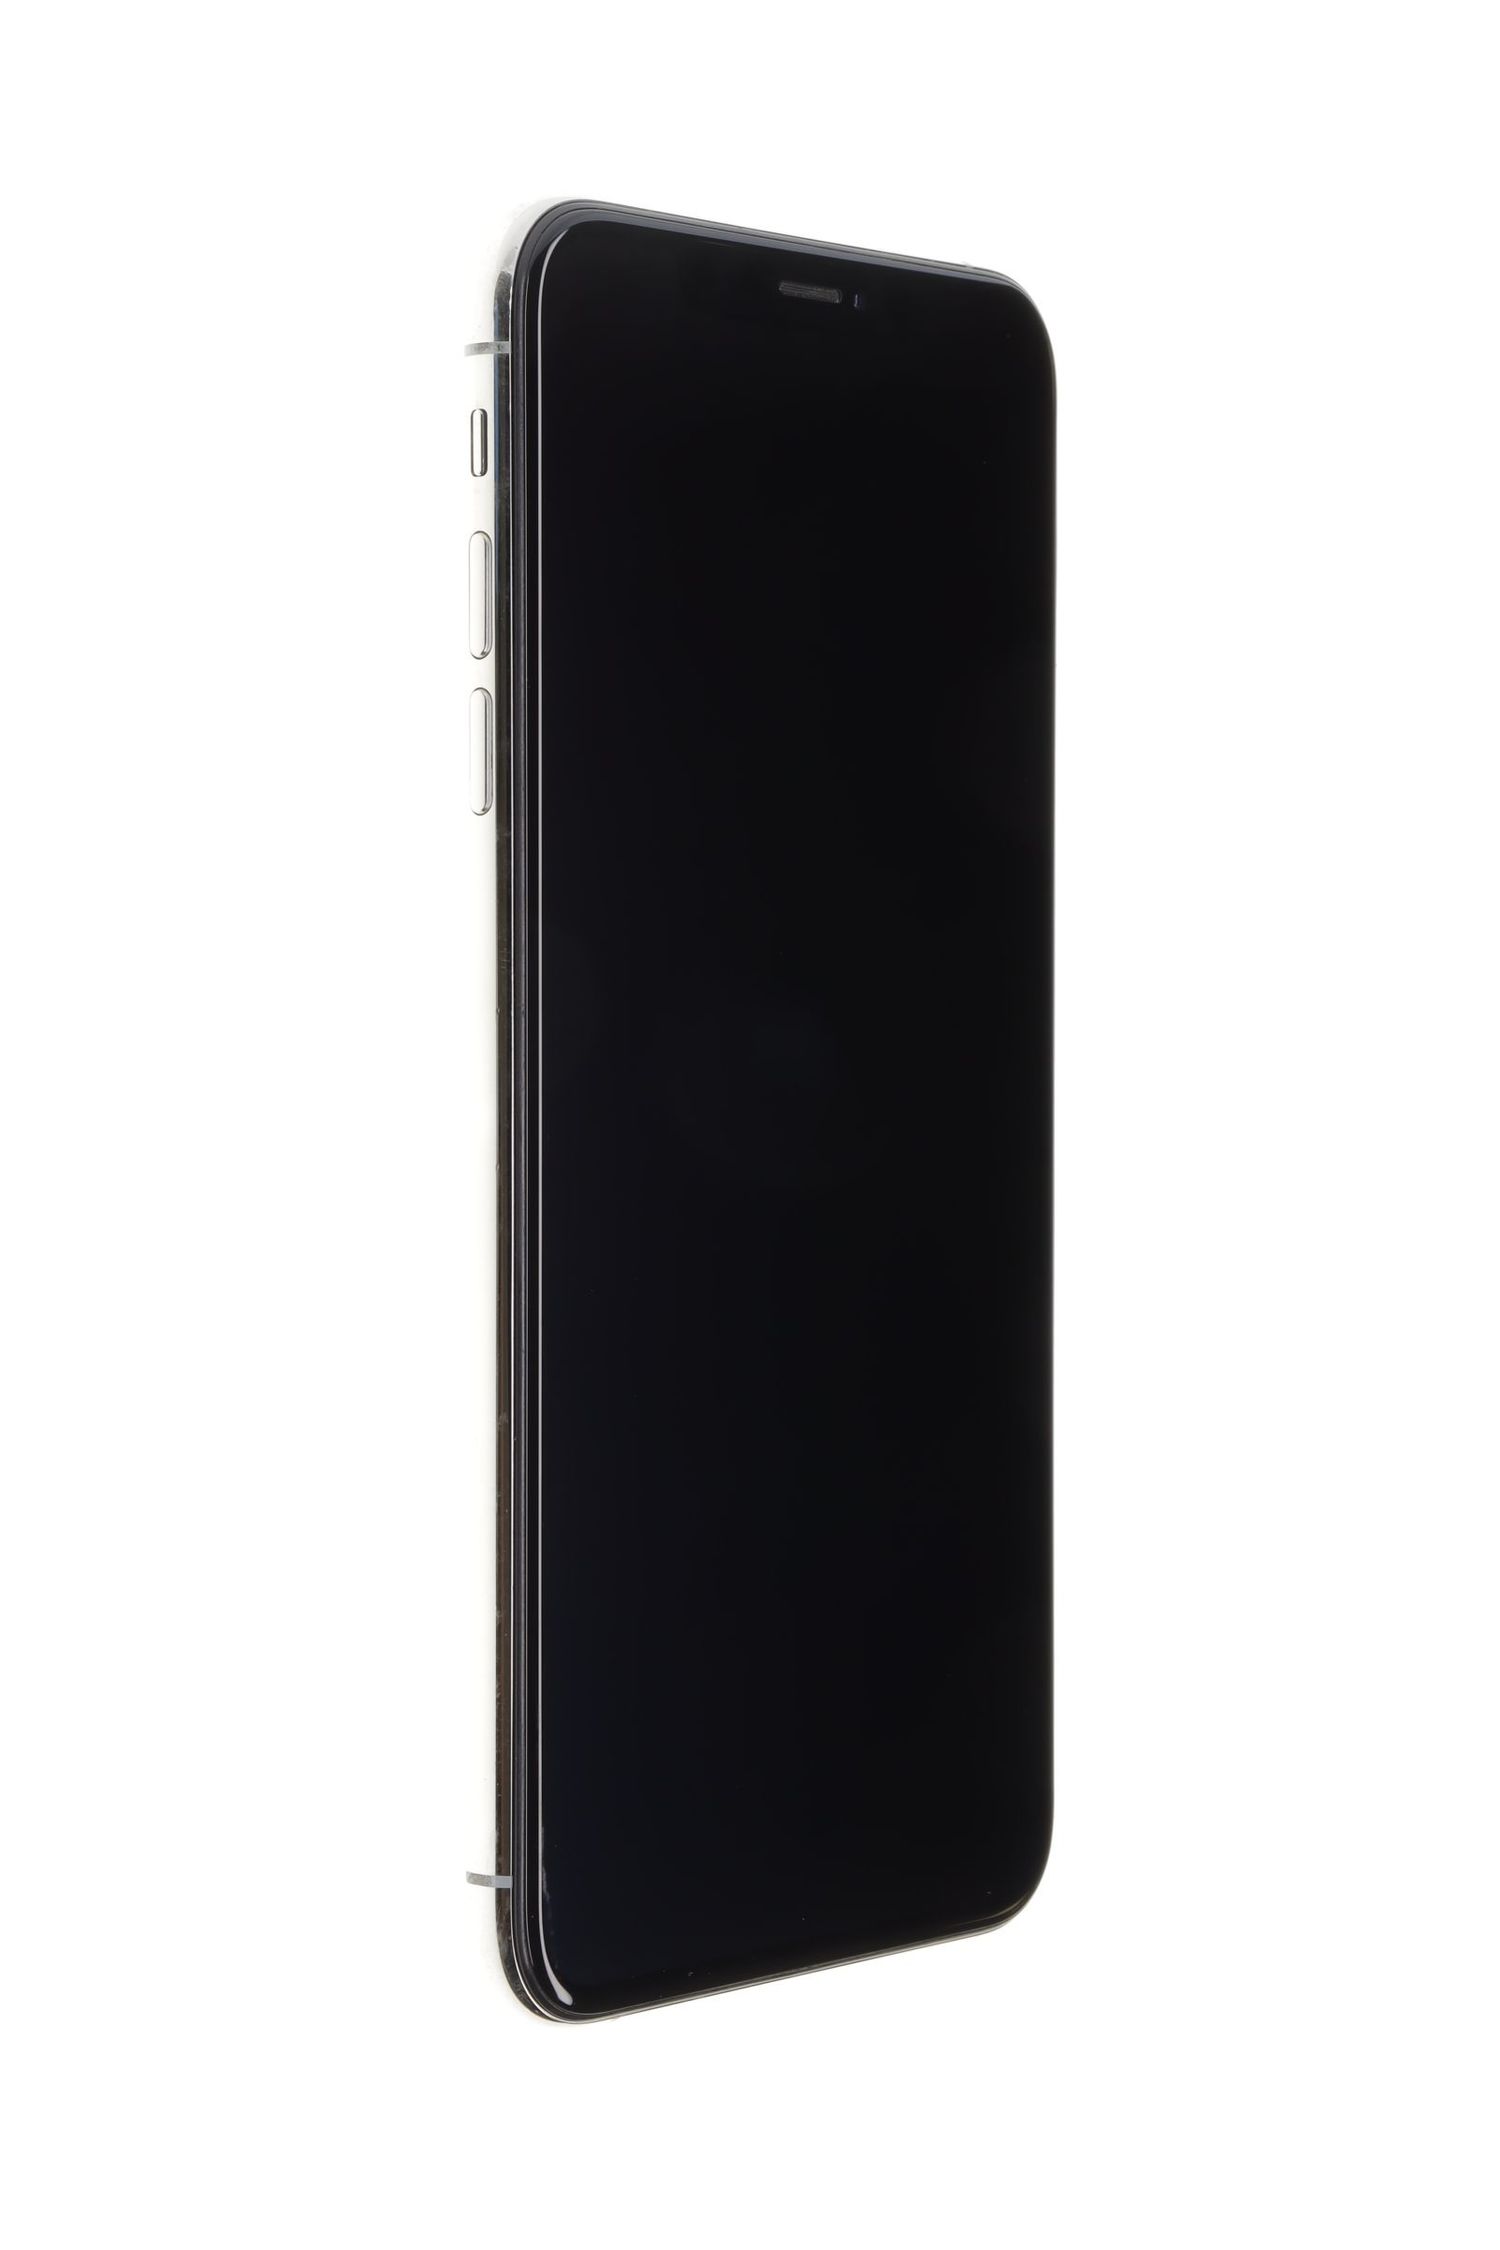 Κινητό τηλέφωνο Apple iPhone XS Max, Silver, 64 GB, Excelent